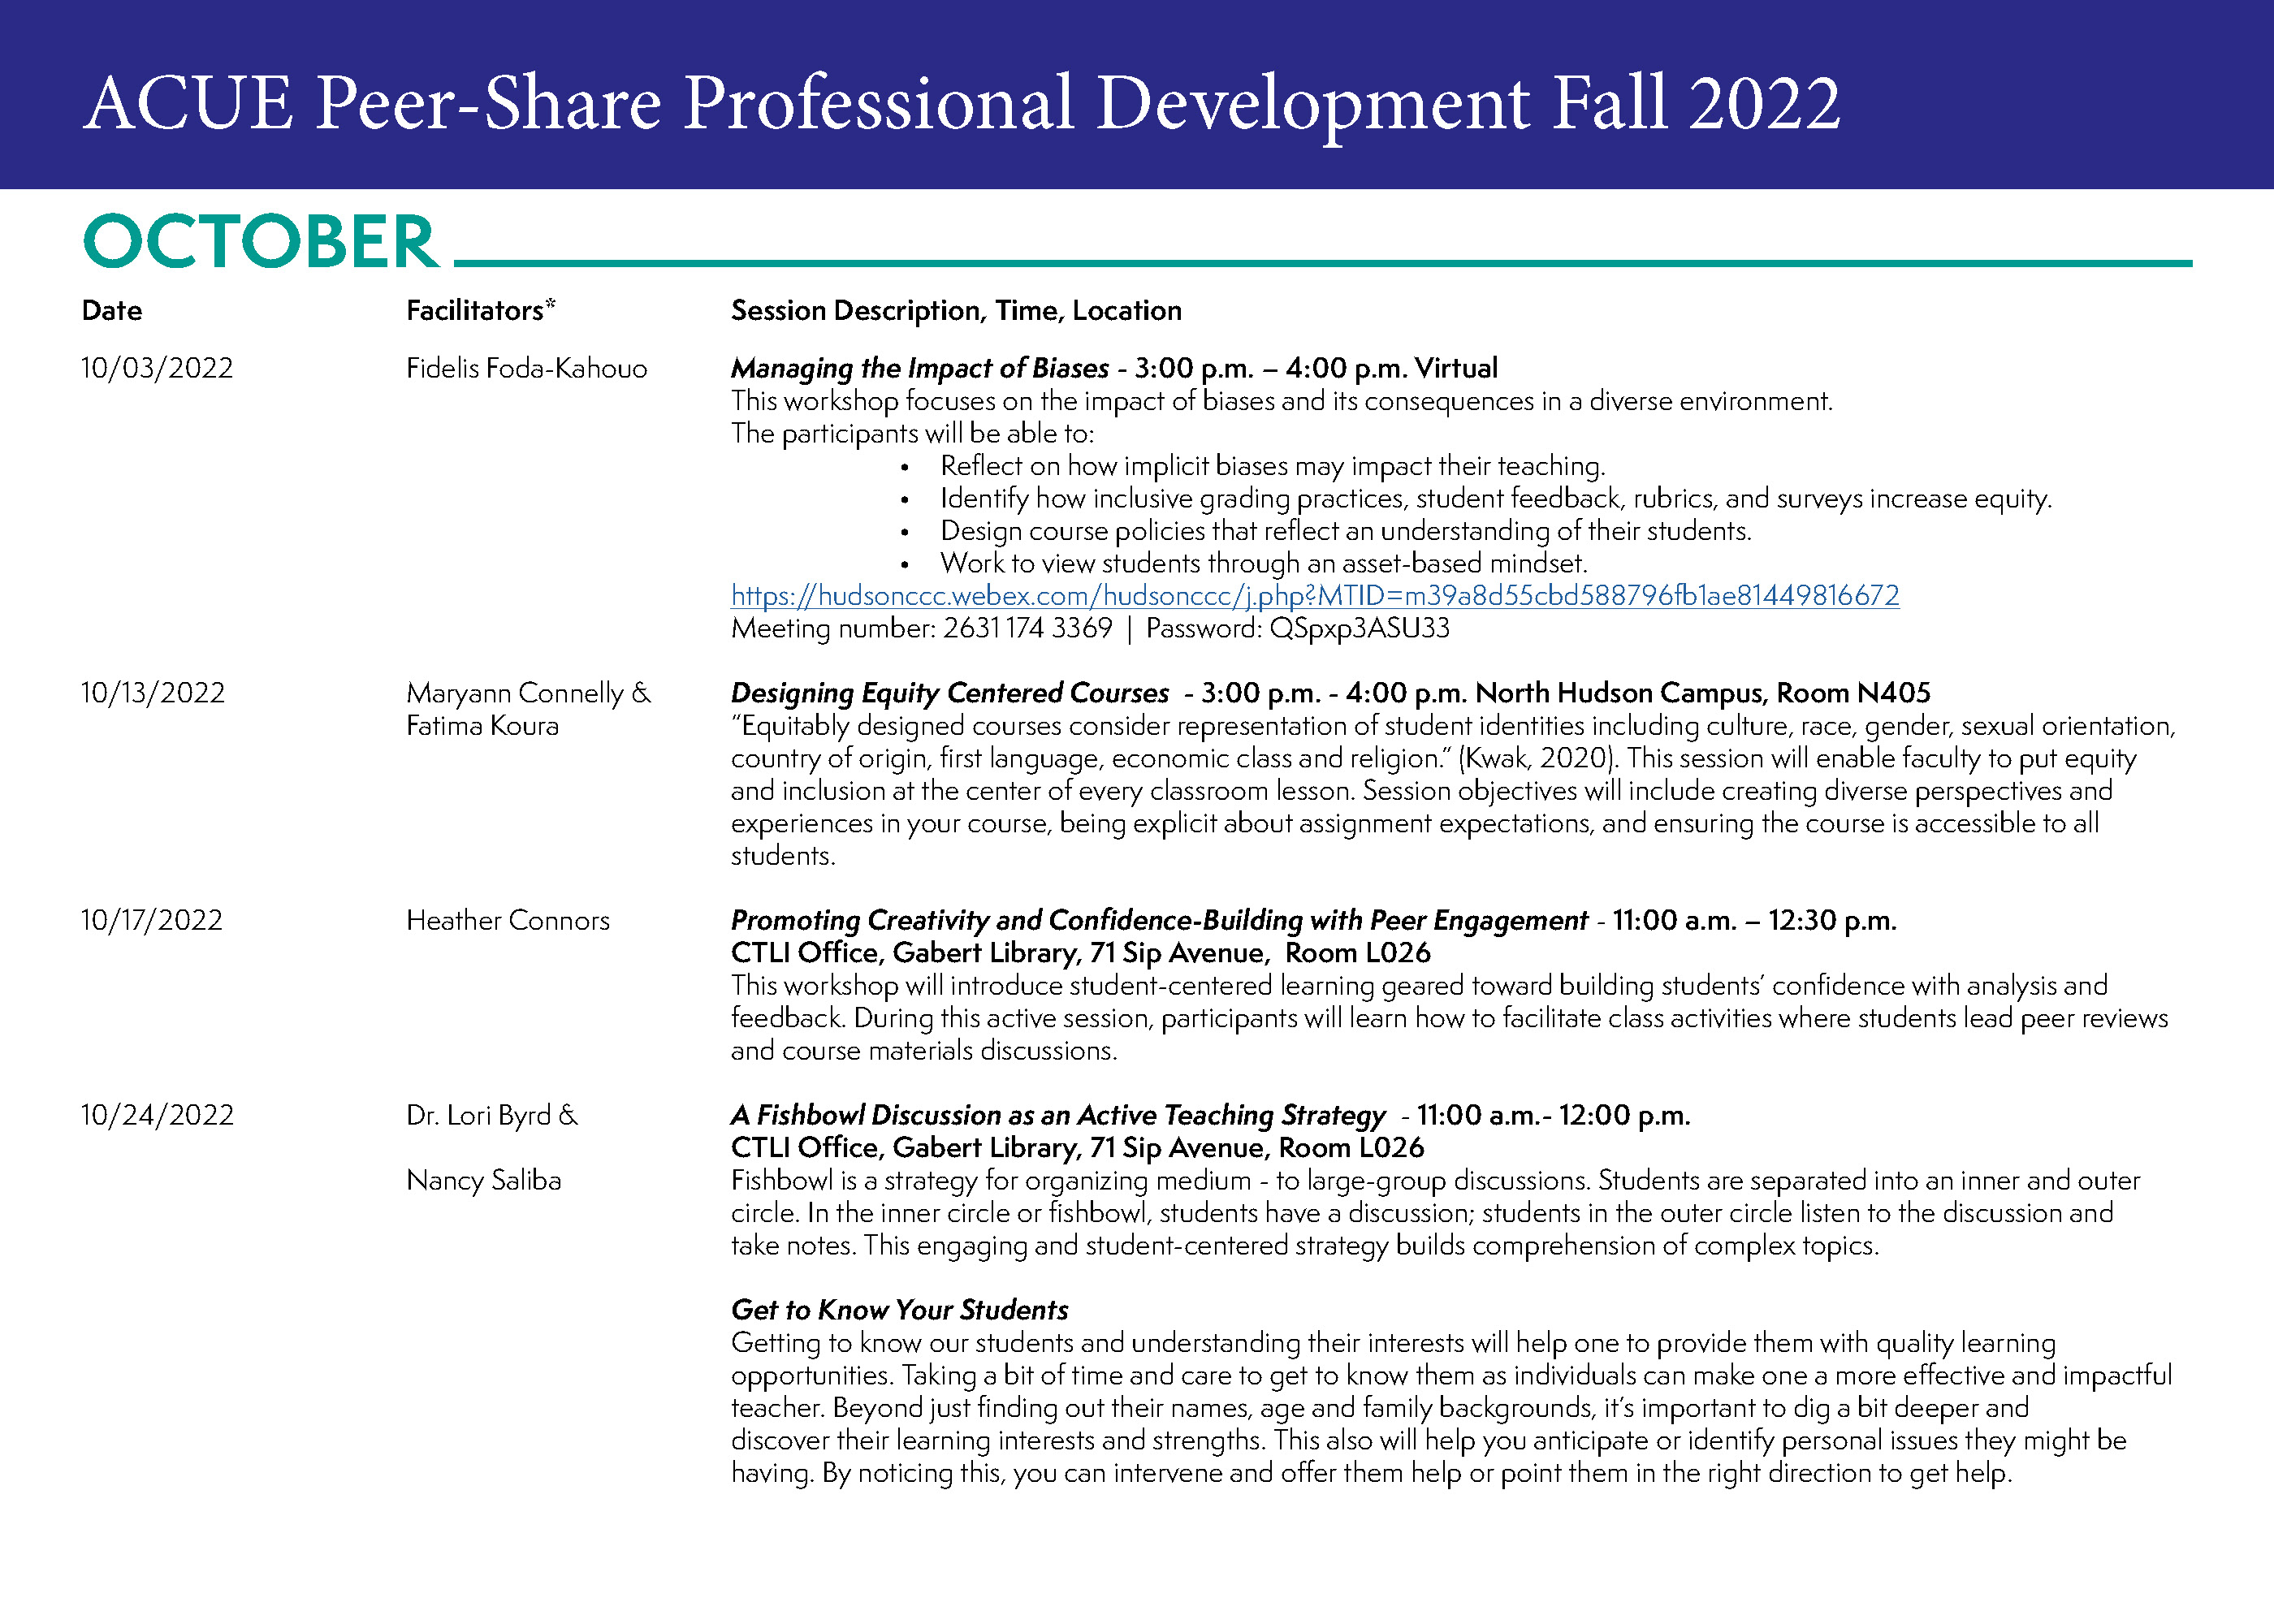 Desarrollo profesional ACUE Peer-Share Otoño 2022 - Calendario de octubre